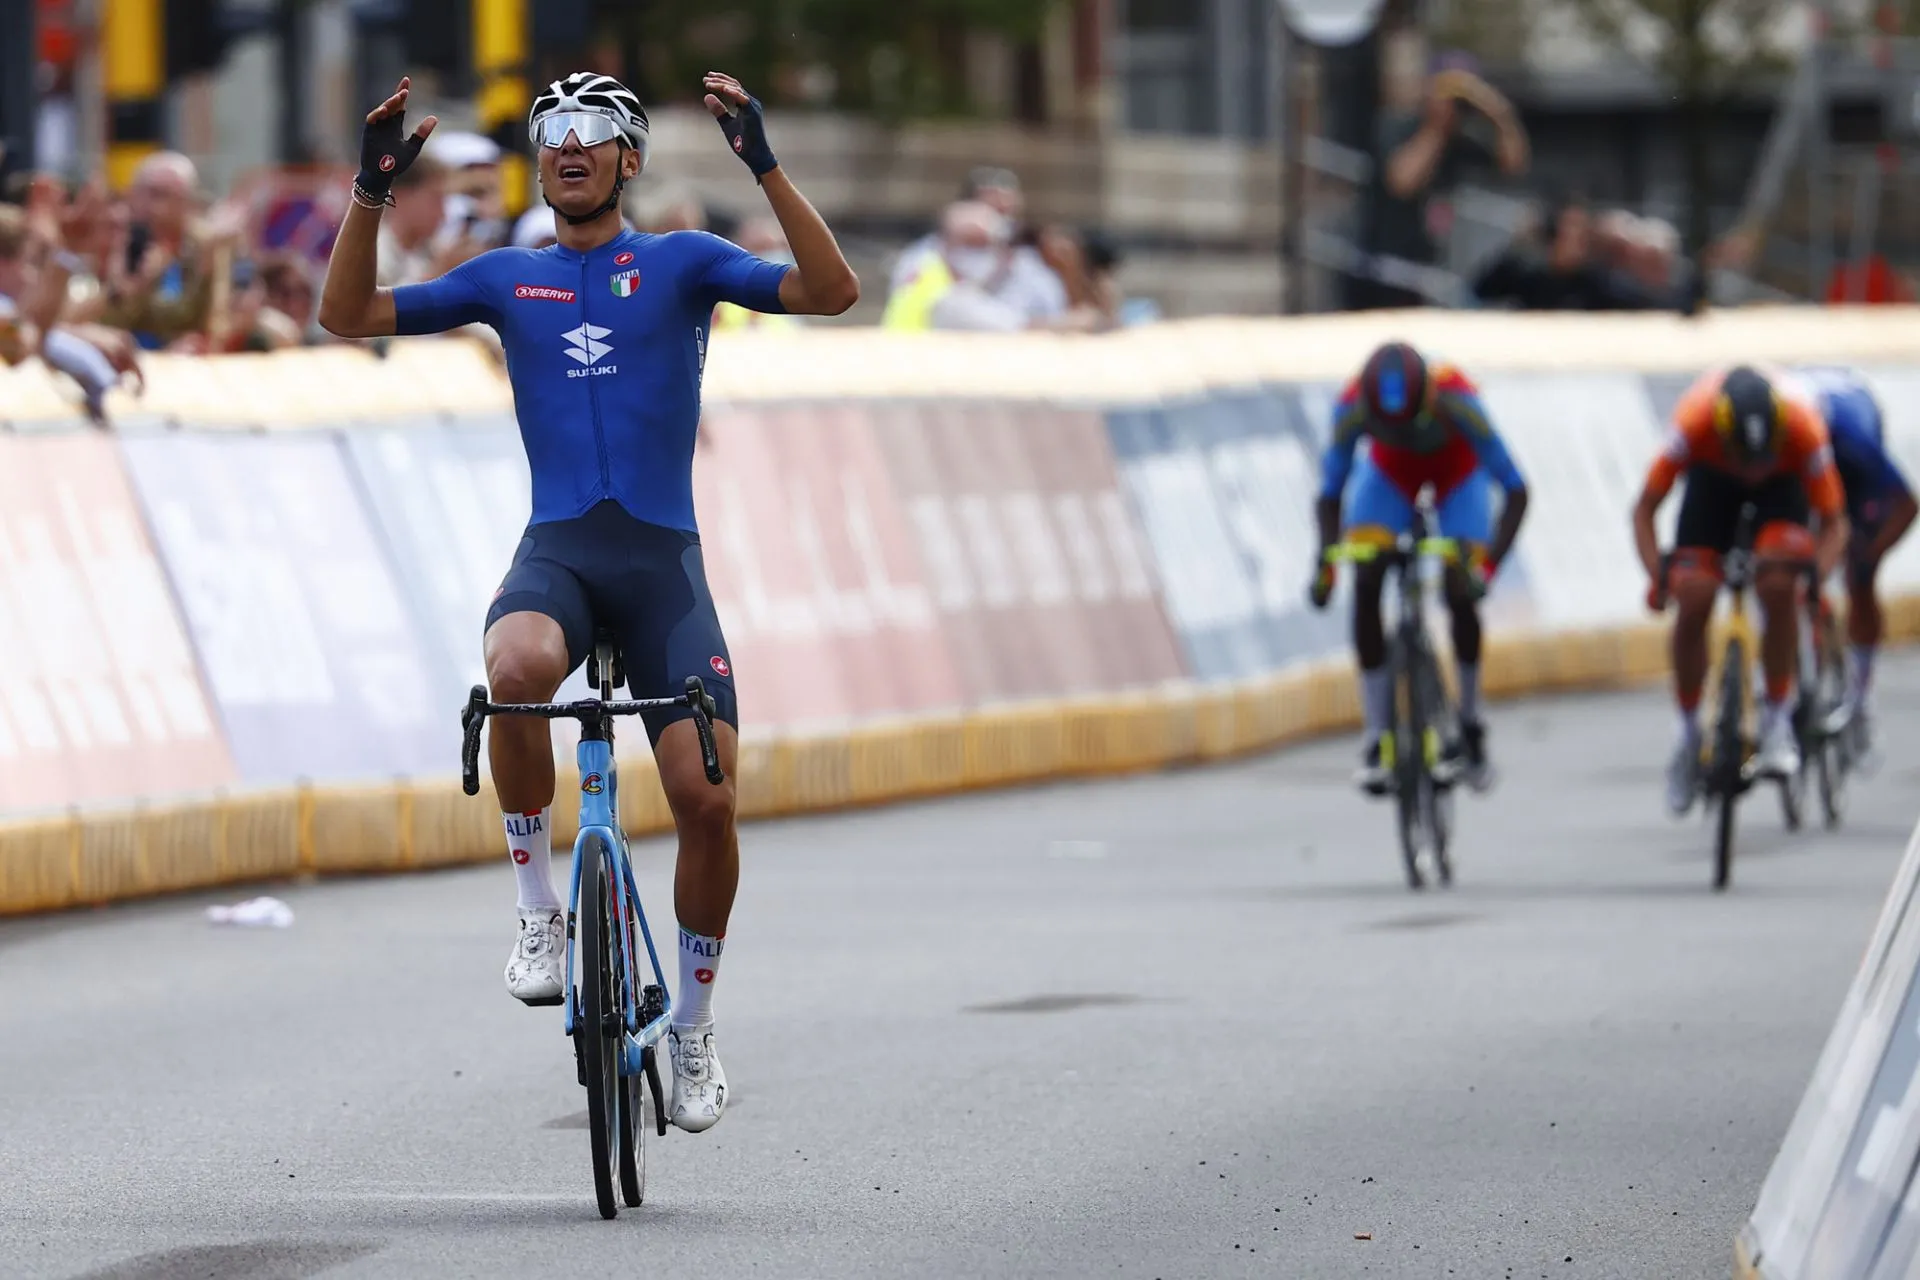 Giải vô địch xe đạp thế giới 2021: Filippo Baroncini giành HCV nội dung đường trường U23 nam